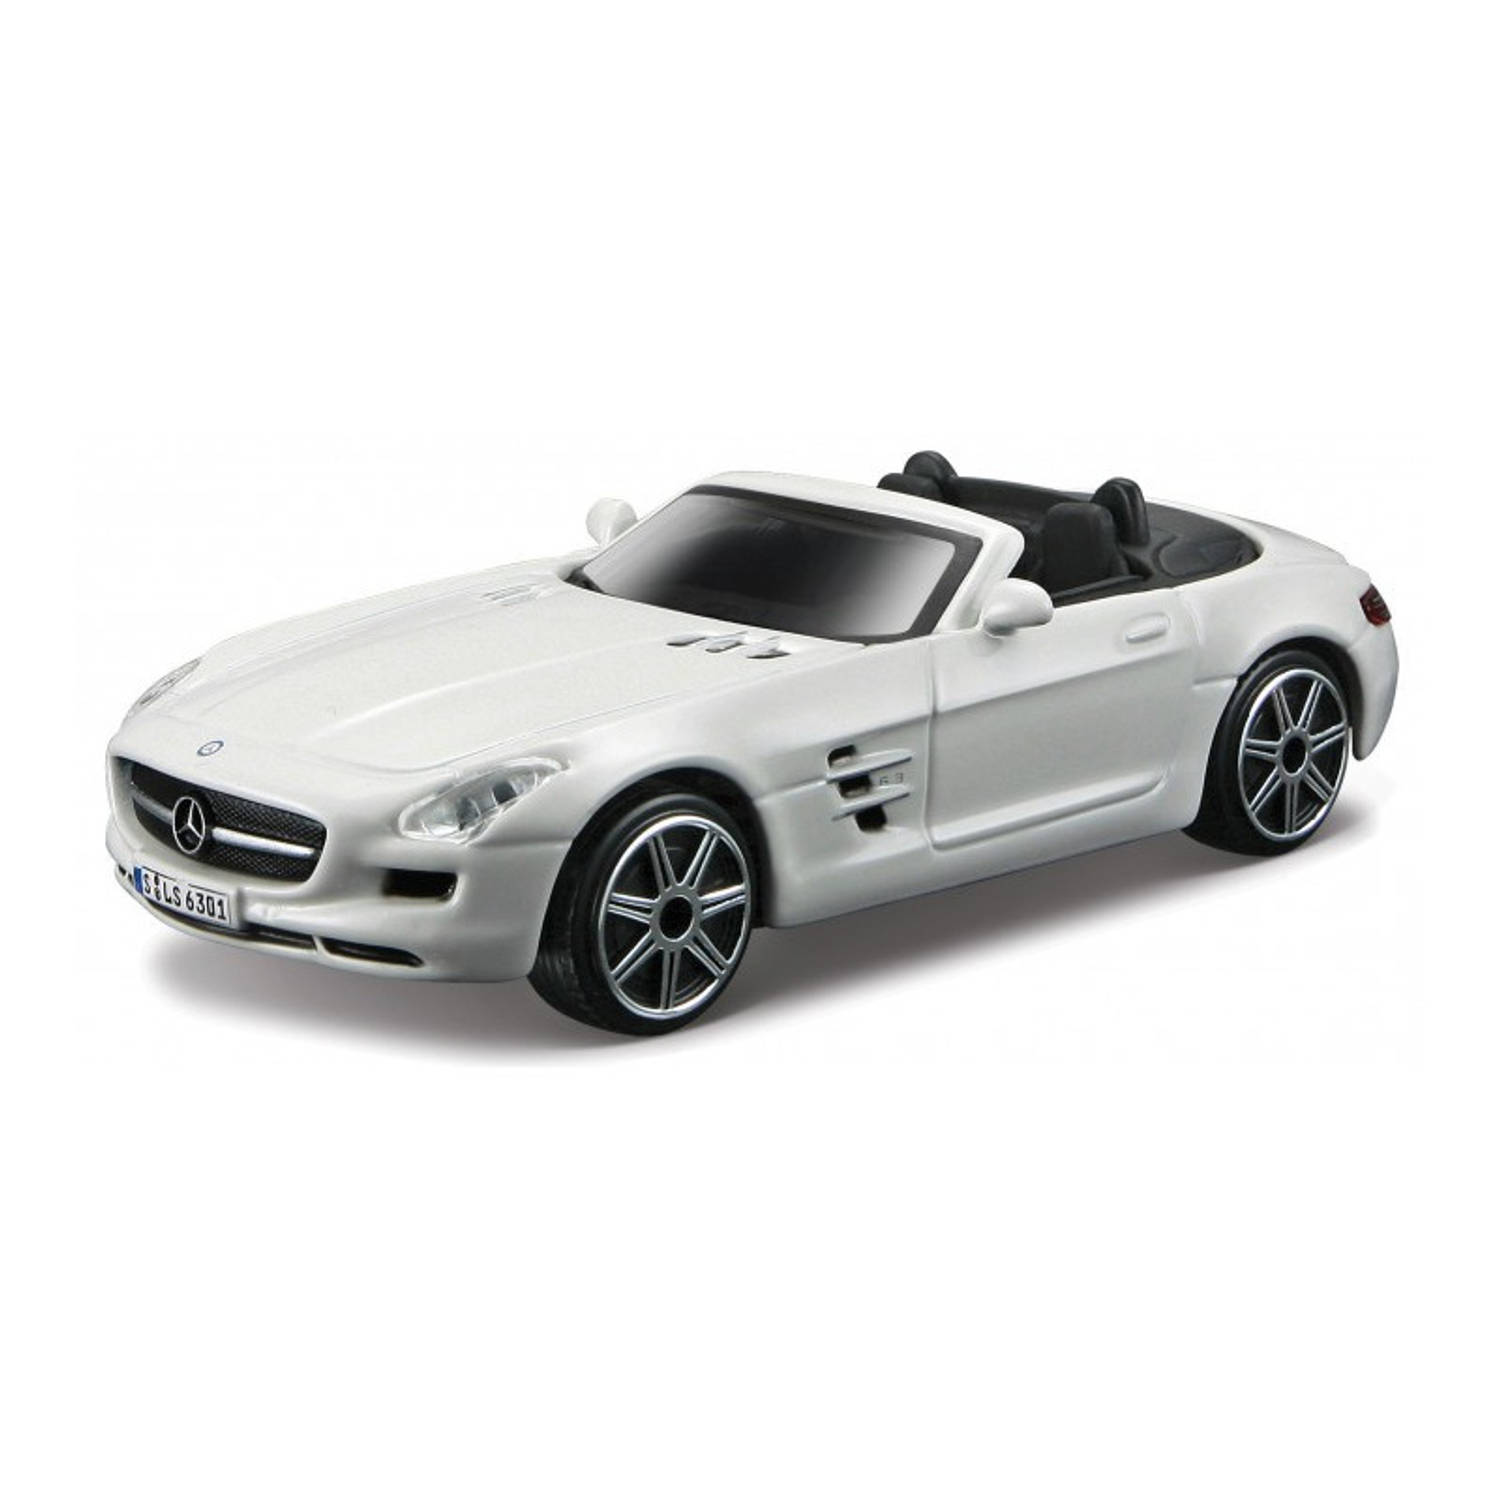 Modelauto Mercedes-Benz SLS AMG wit schaal 1:43/11 x 4 x 3 cm - Speelgoed auto&apos;s